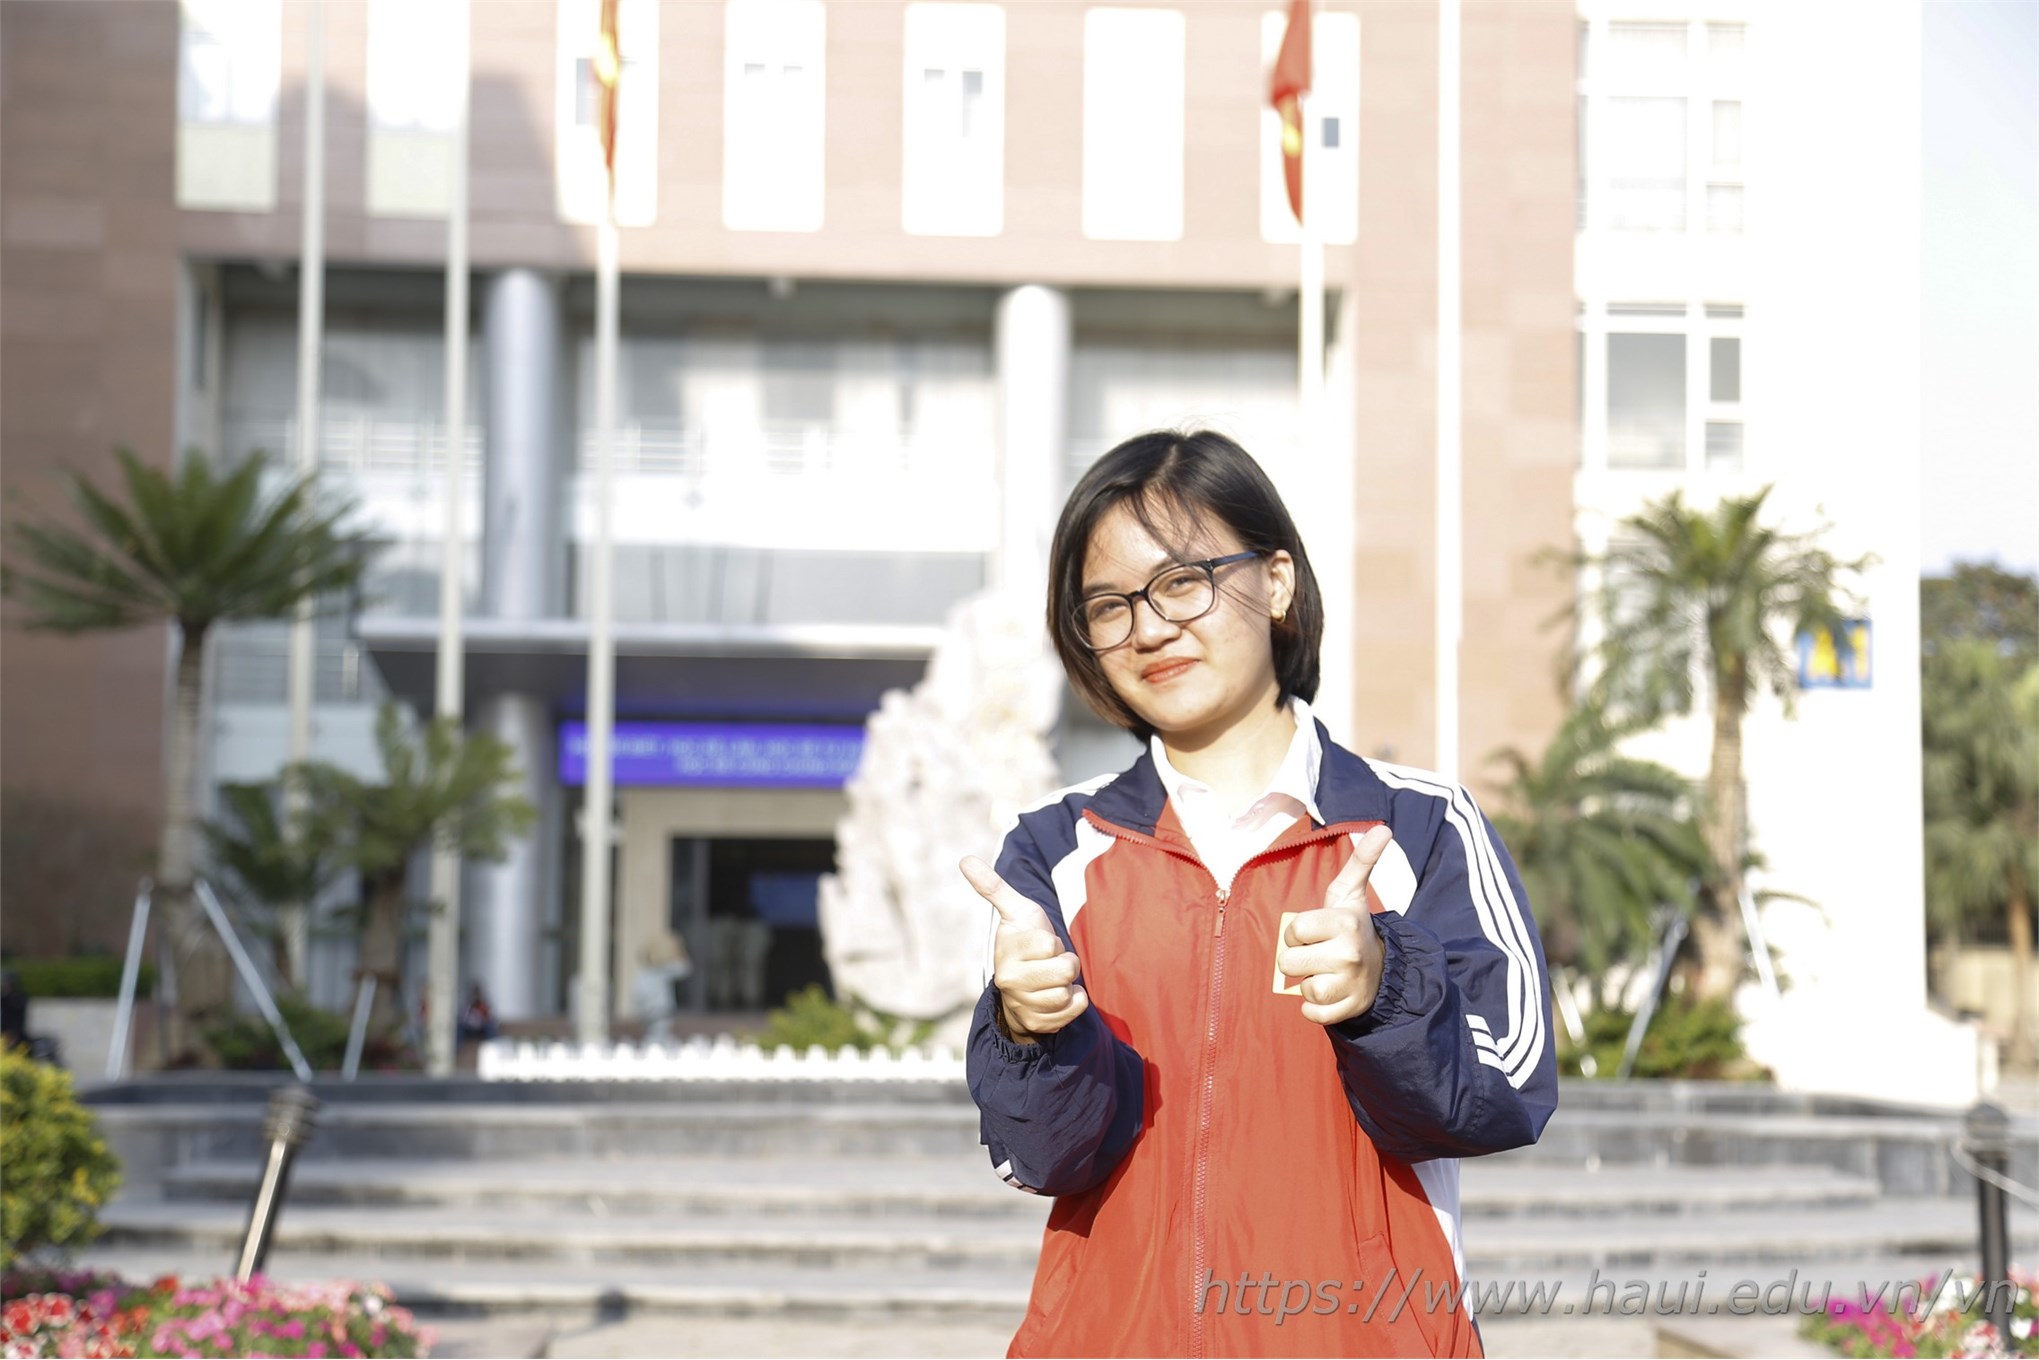 Đại học Công nghiệp Hà Nội viết tiếp ước mơ cho Hằng Nga - cô sinh viên mồ côi vượt khó